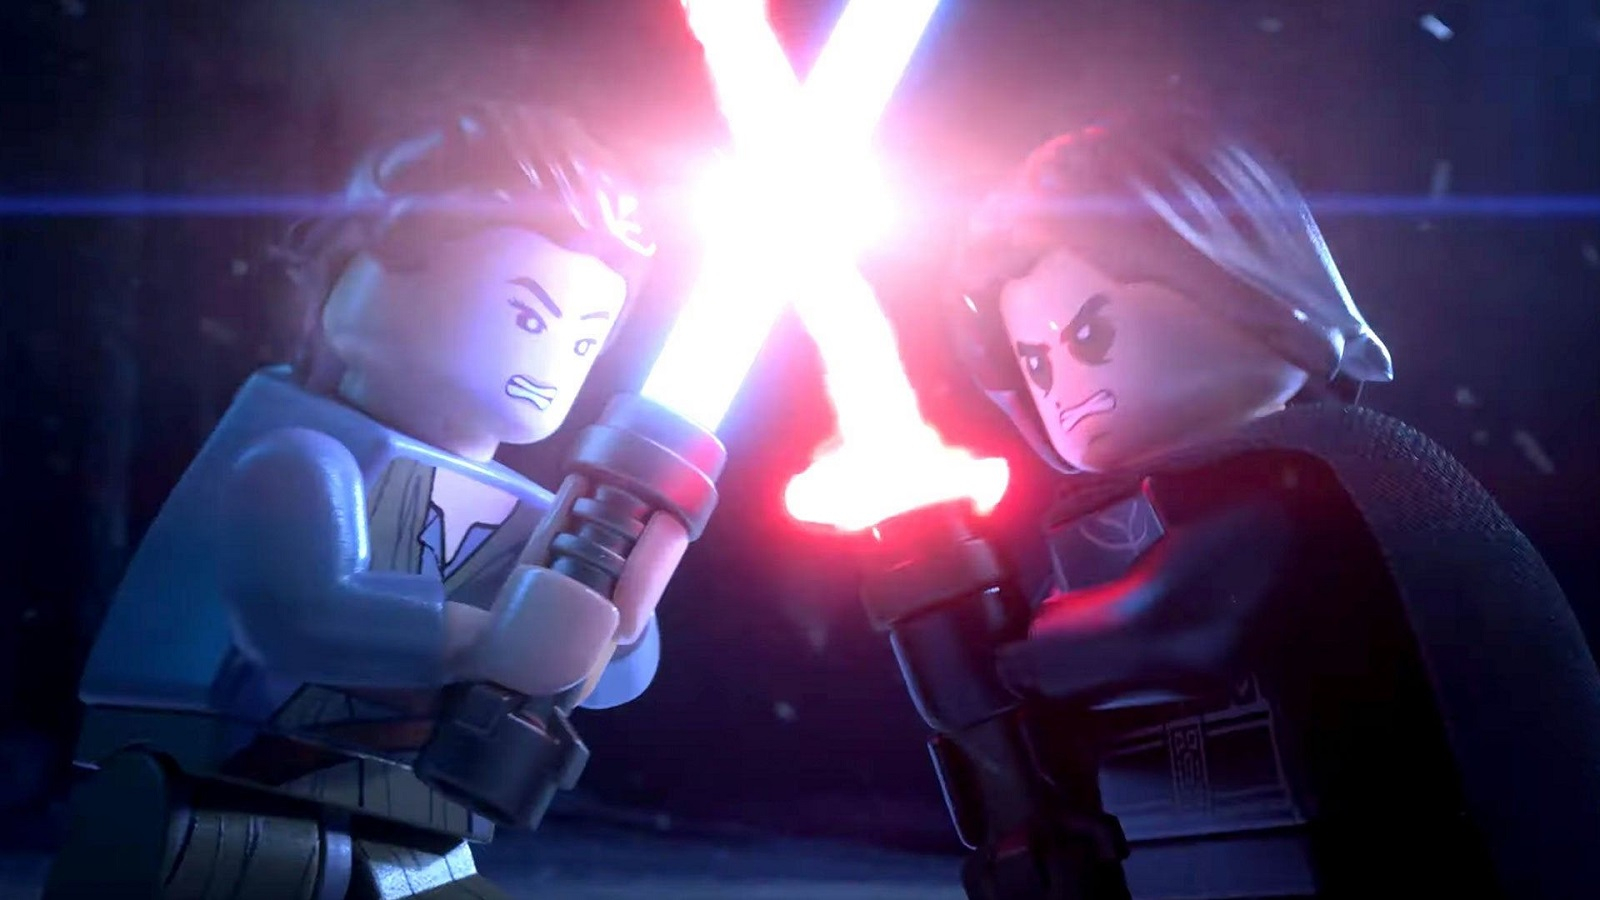 LEGO Star Wars: The Skywalker Saga предложит взять под контроль около 300 персонажей, включая Бабу Фрика